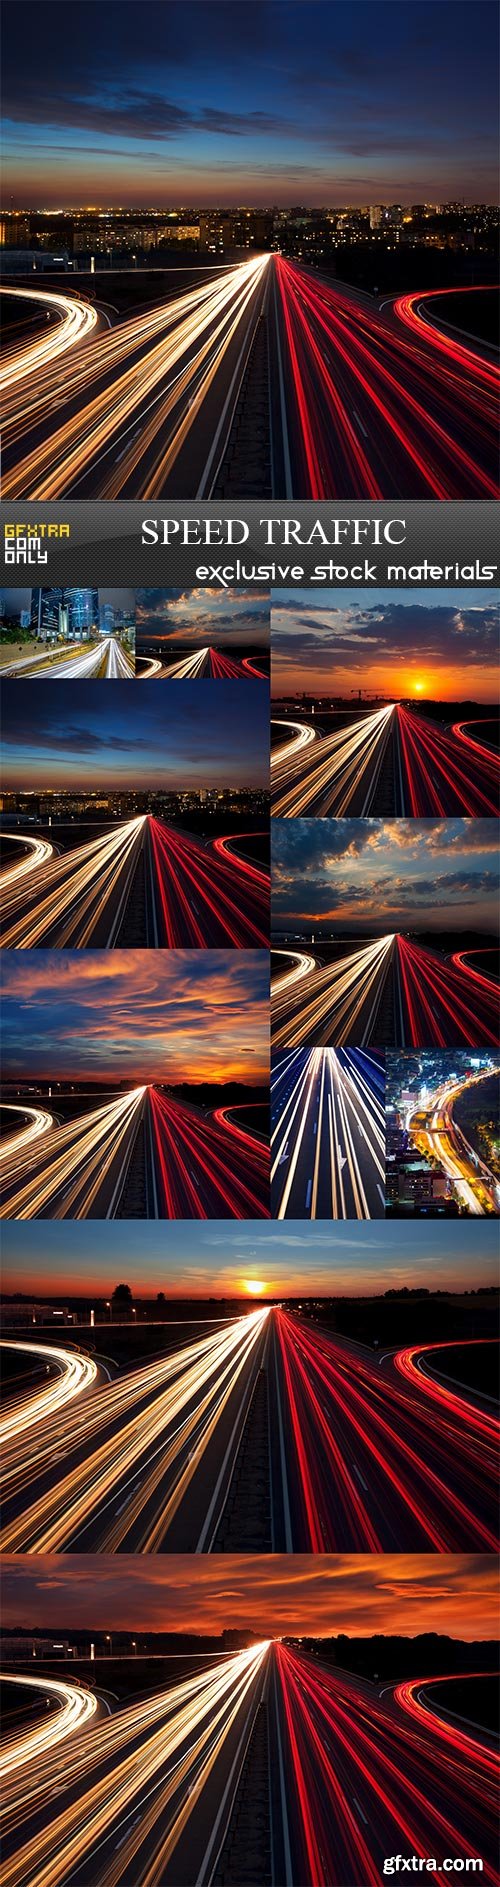 Speed Traffic, 10 x UHQ JPEG